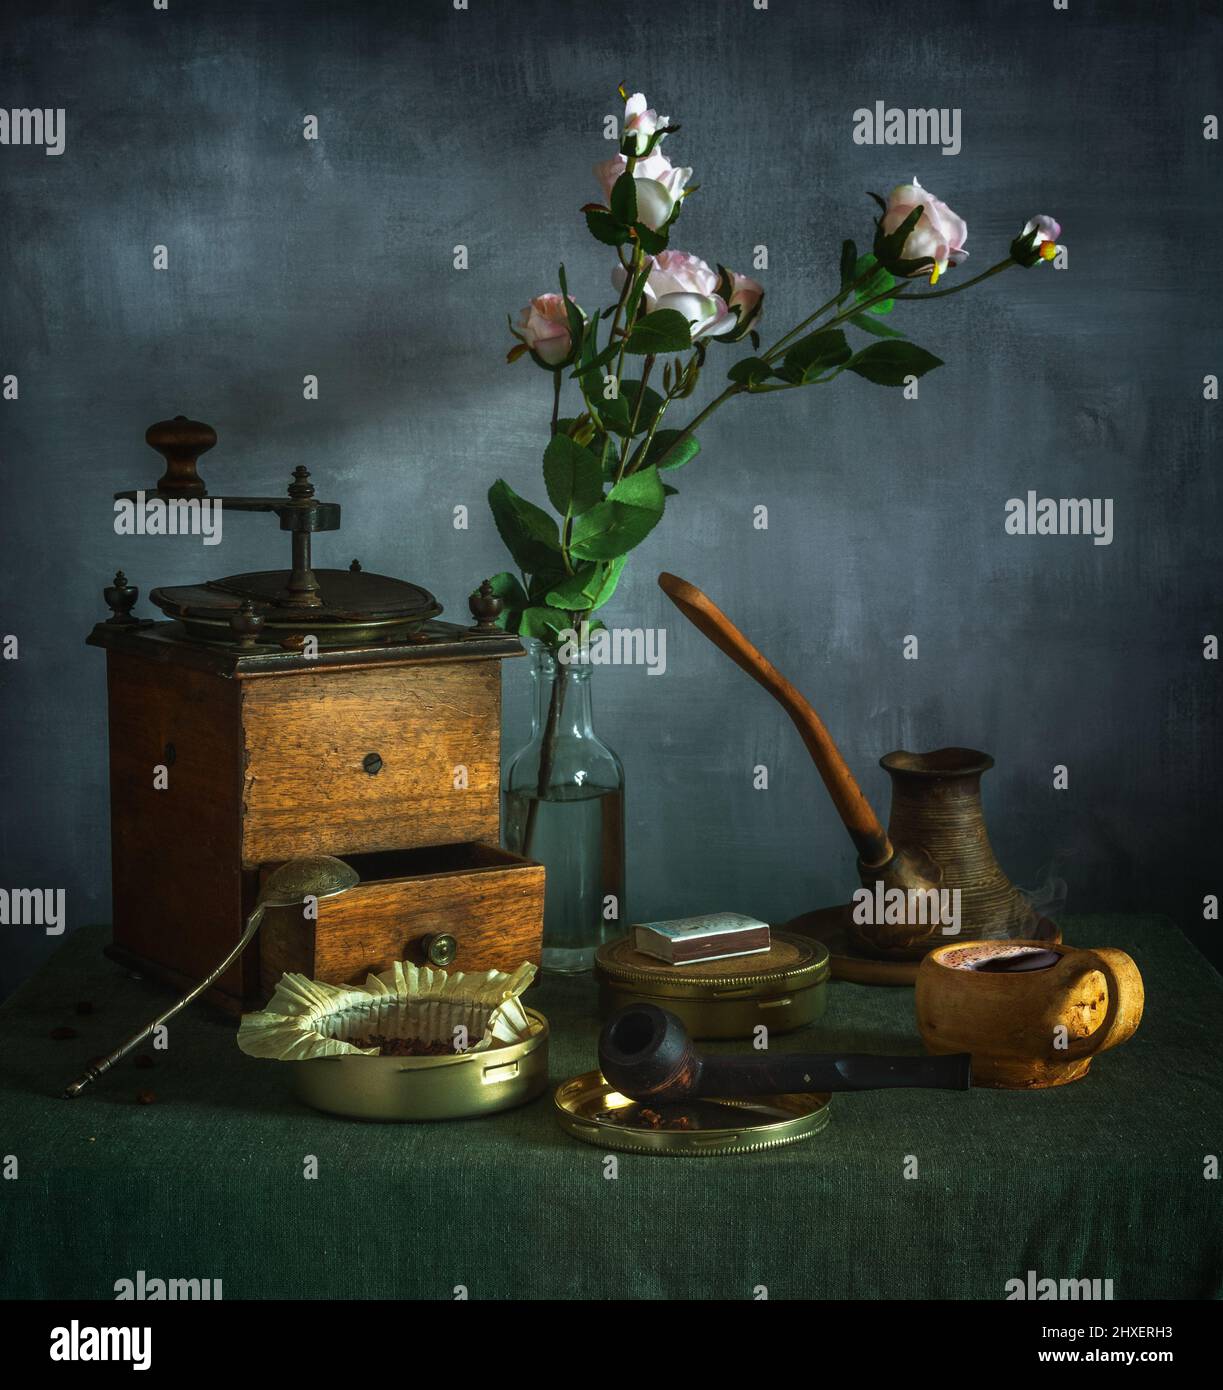 Stillleben mit einem Blumenstrauß, einer Tasse Kaffee, einer alten Kaffeemühle und einer Rauchpfeife. Vintage. Stockfoto